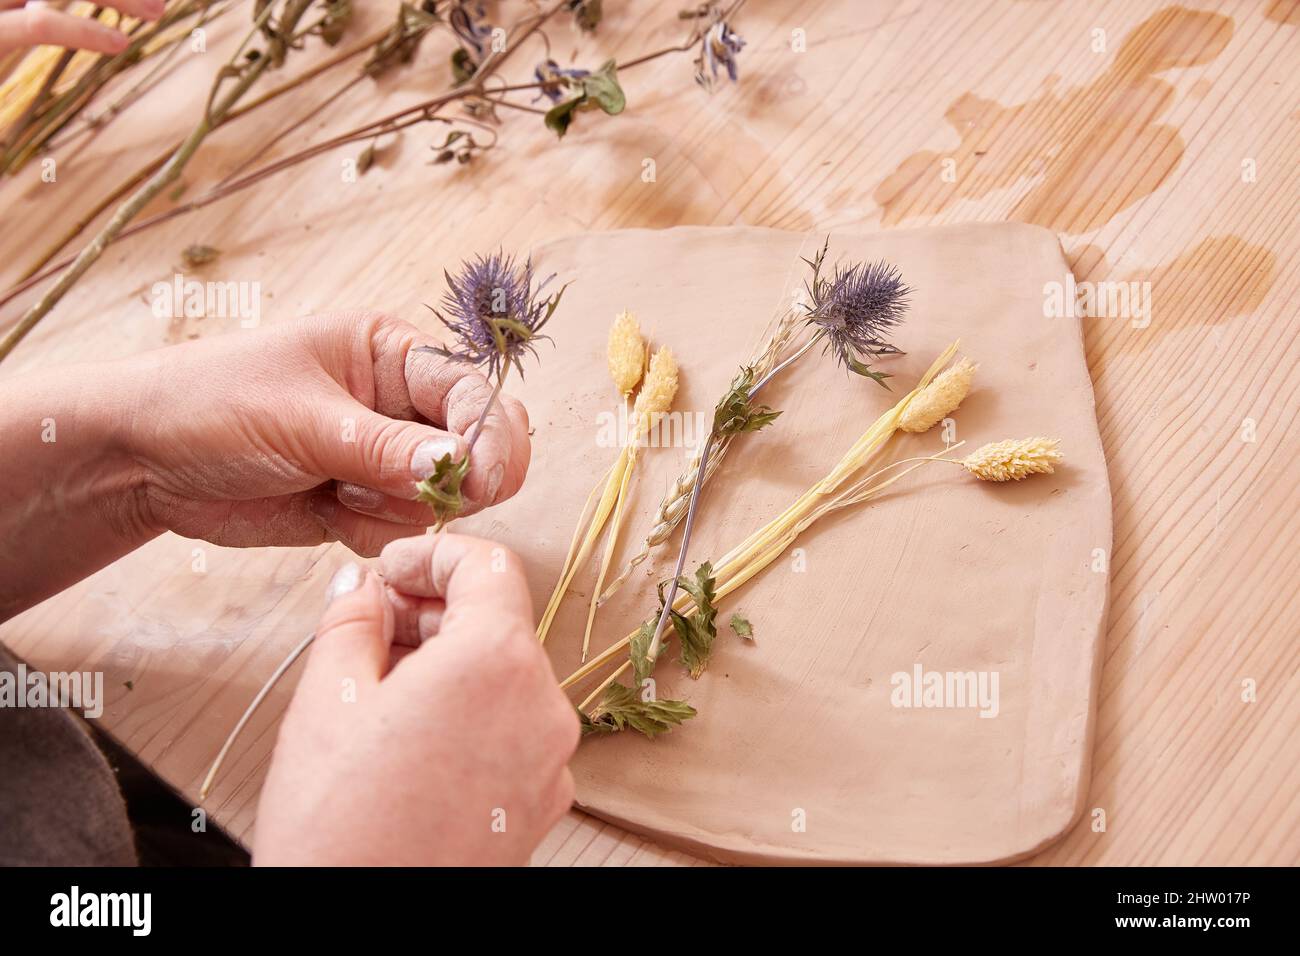 Las hermosas manos de mujeres hacen platos de cerámica con estampados de flores y flores secas Foto de stock